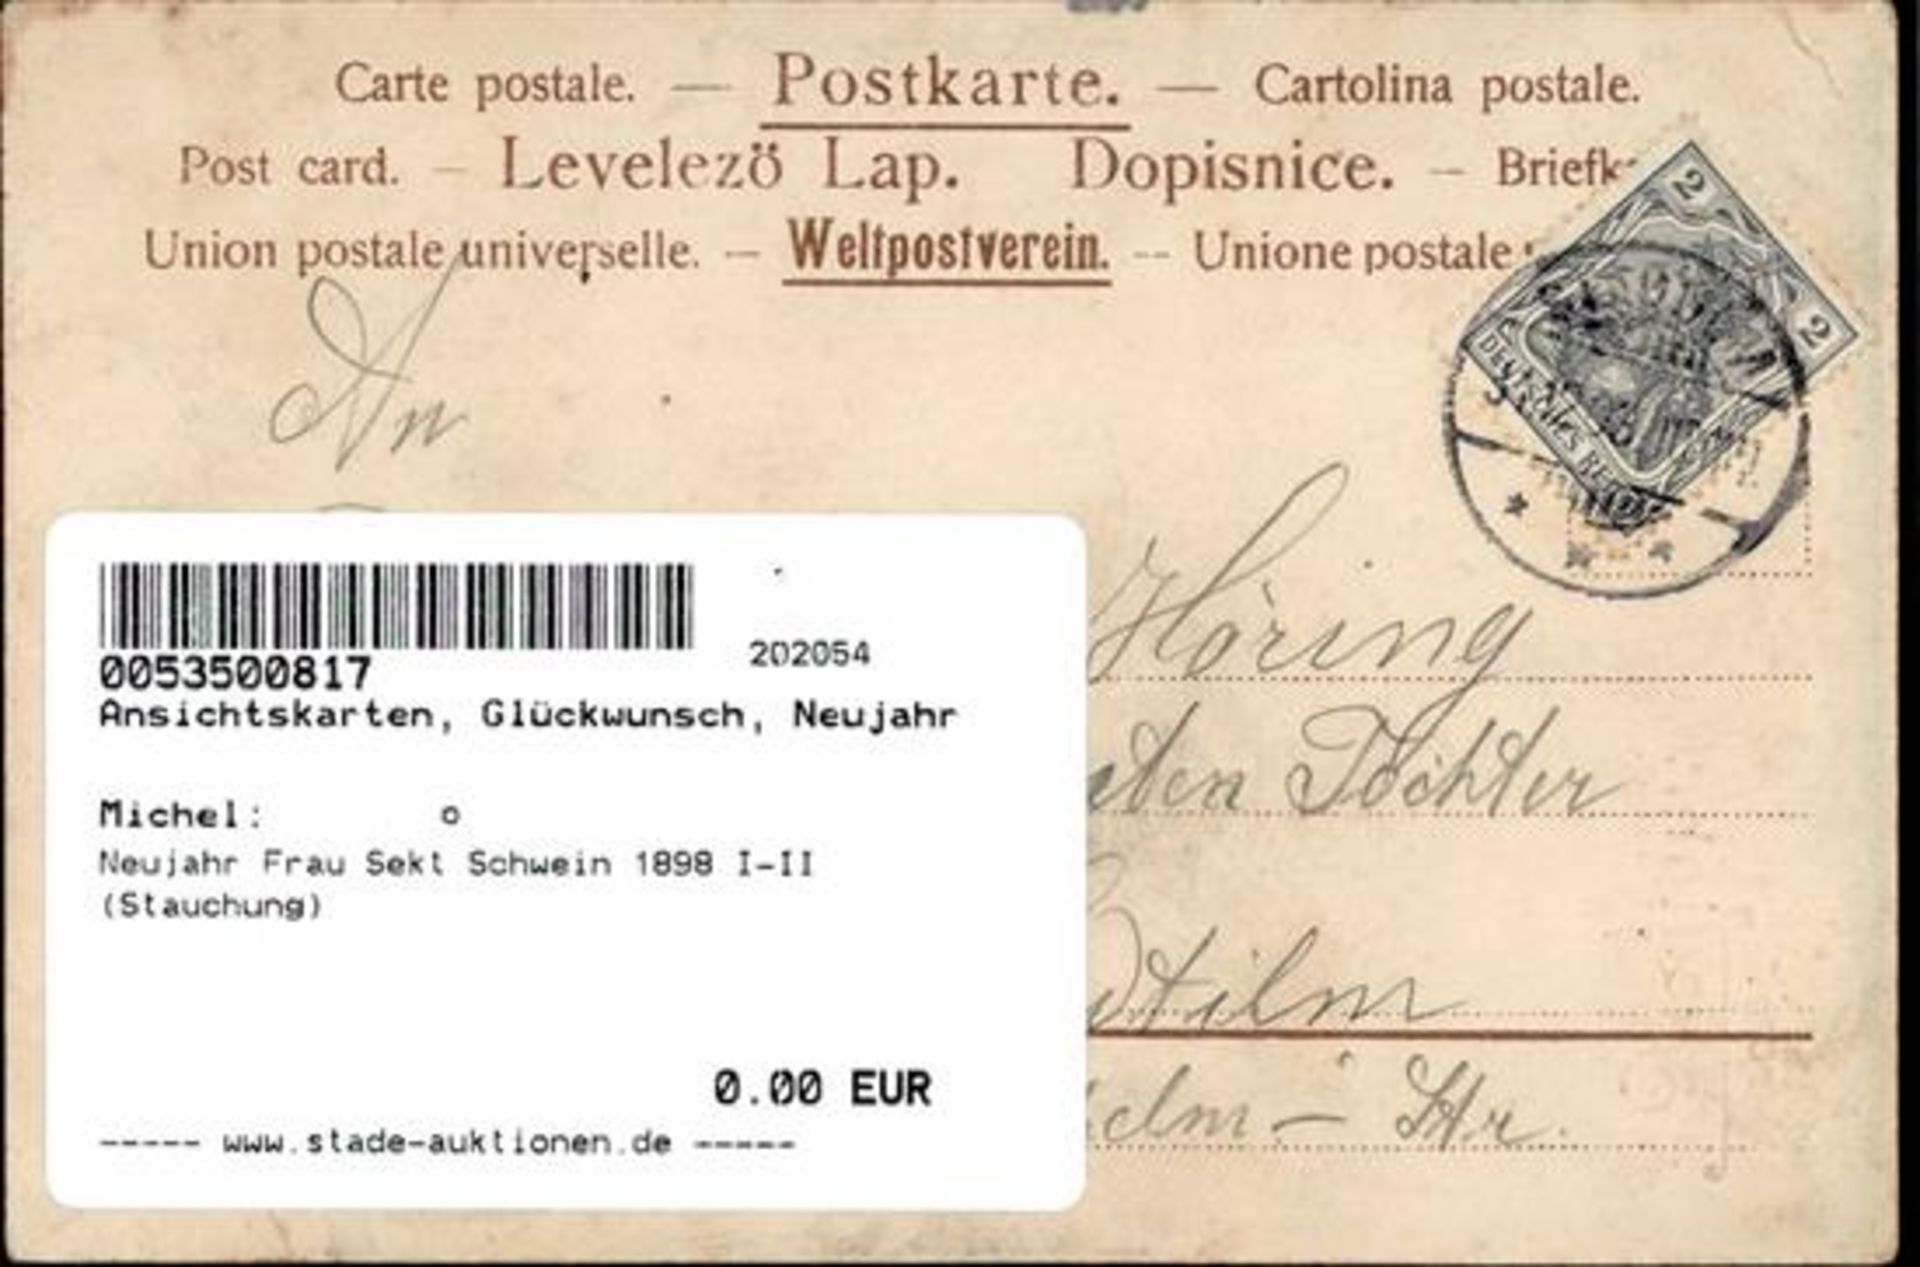 Neujahr Frau Sekt Schwein 1898 I-II (Stauchung) - Bild 2 aus 2